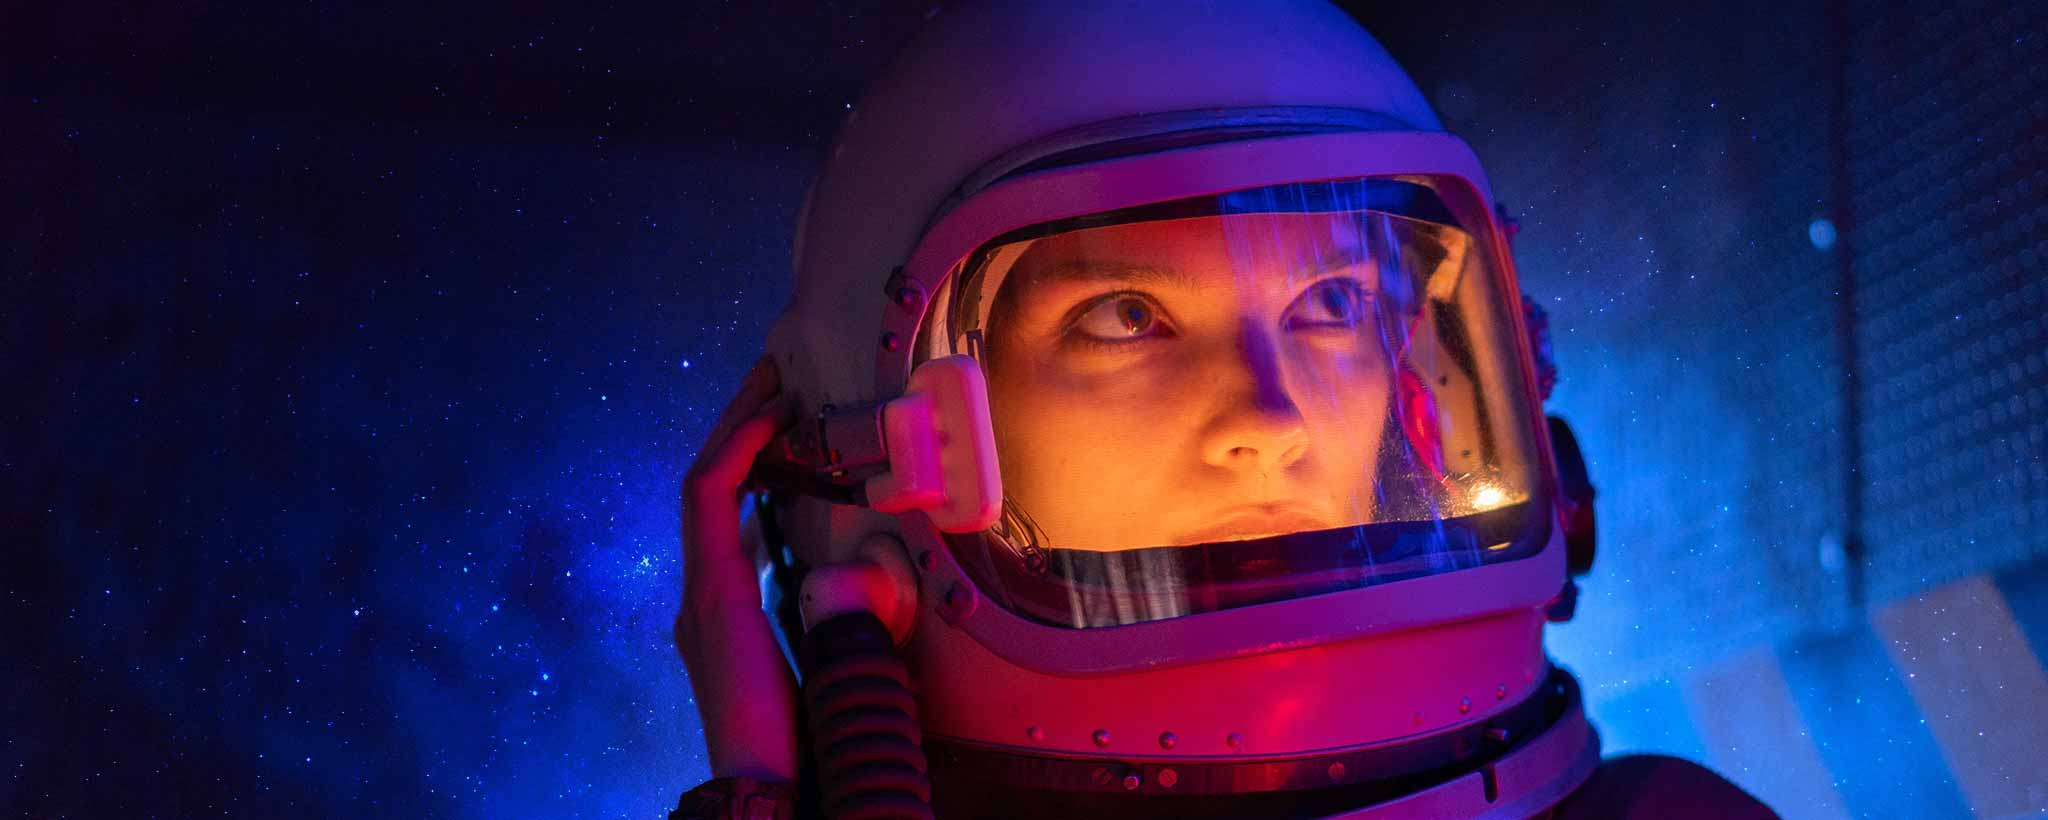 'Female wearing space helmet'